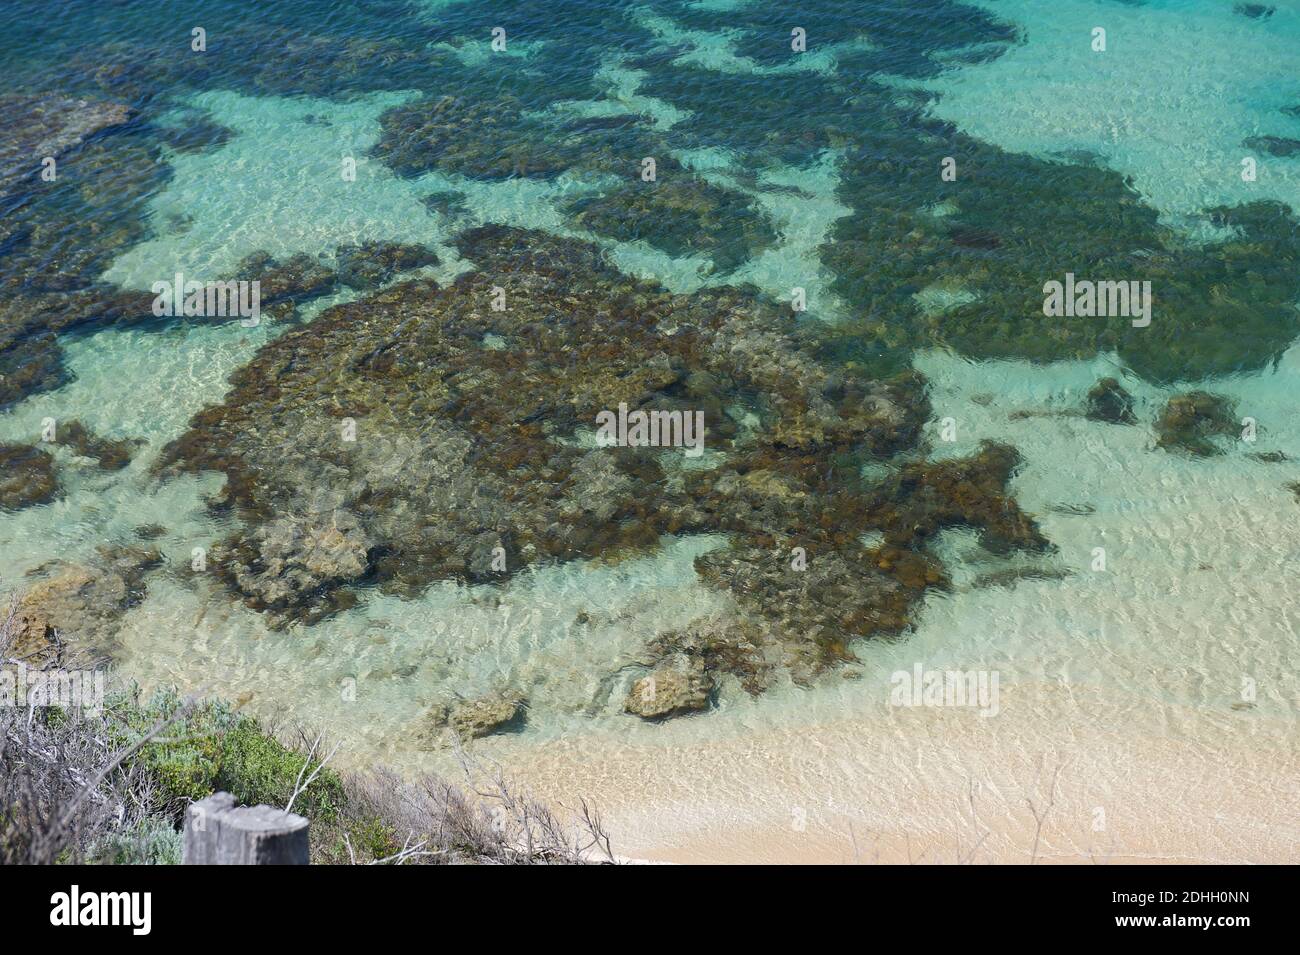 Australien unter dem Meer - ein mit Algen bedeckter Felsen, der wie eine Karte von Australien aussieht, in Port Phillip Bay, nahe Point Nepean in Victoria, Australien. Stockfoto